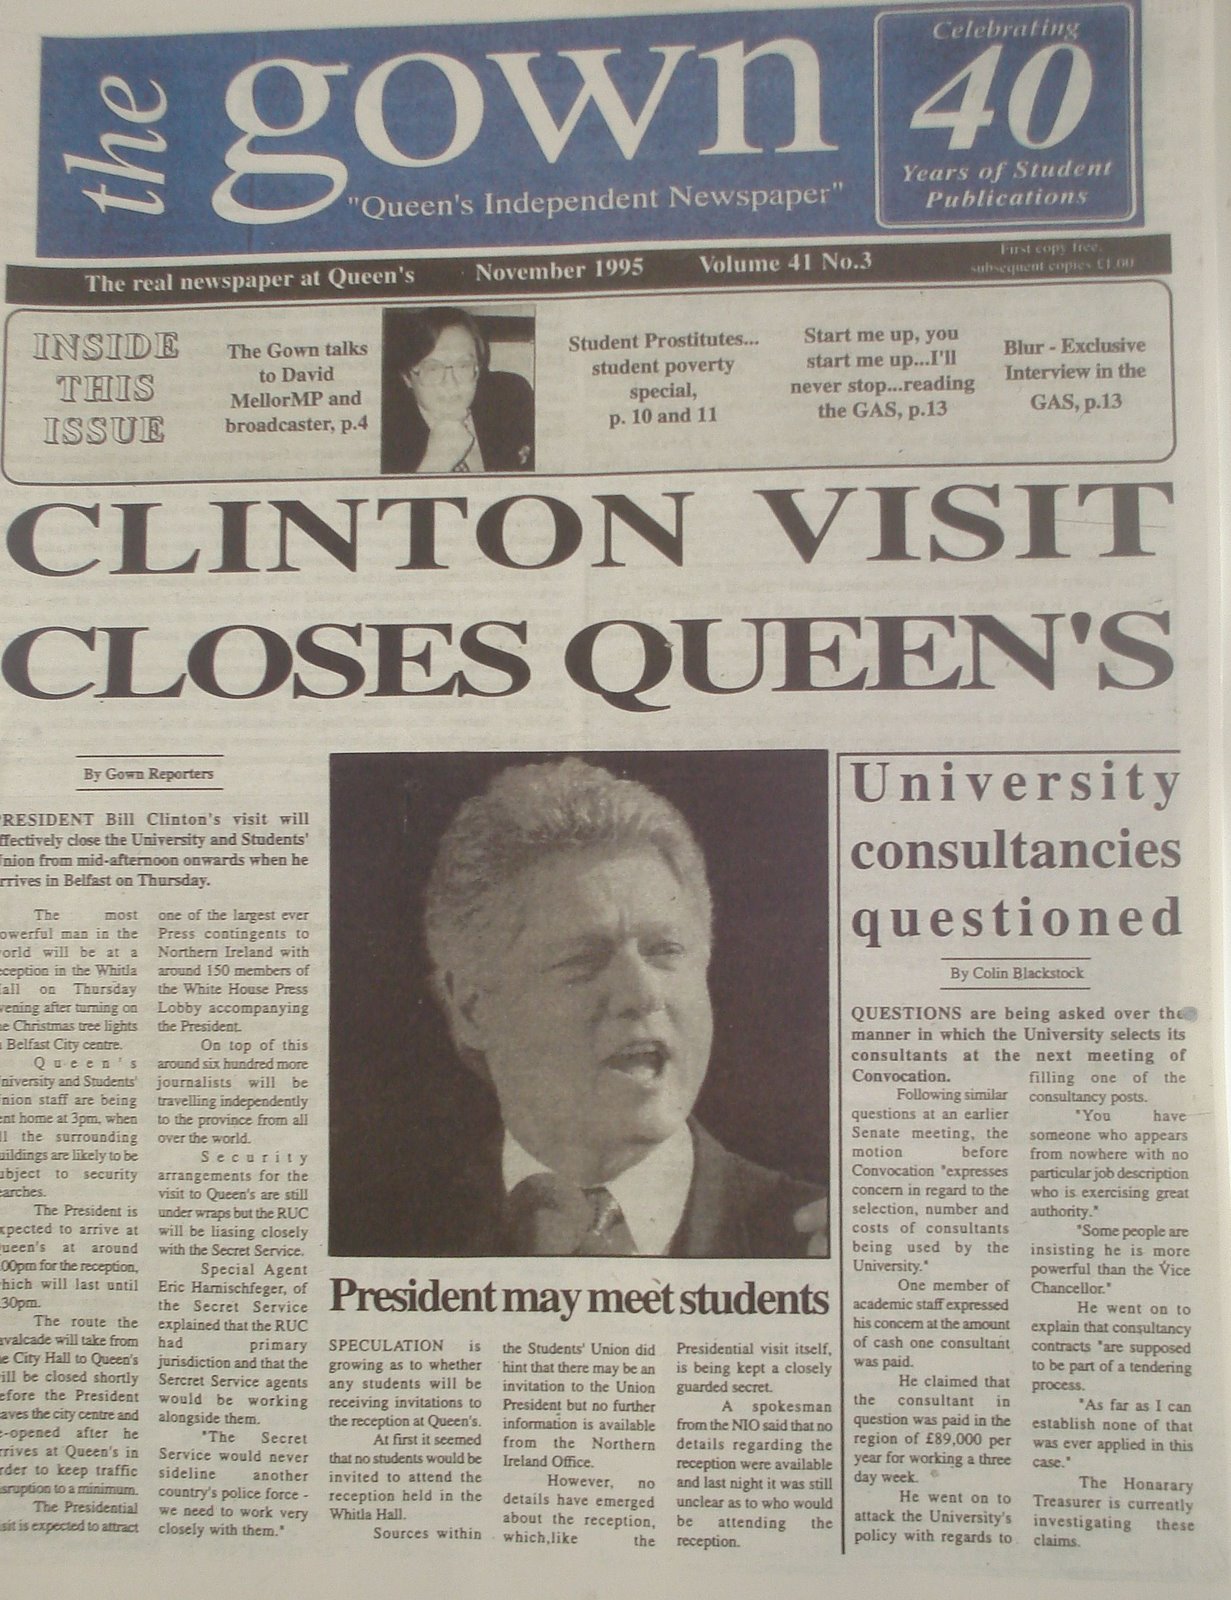 [PIC+-+Clinton+visit+closes+Queen]